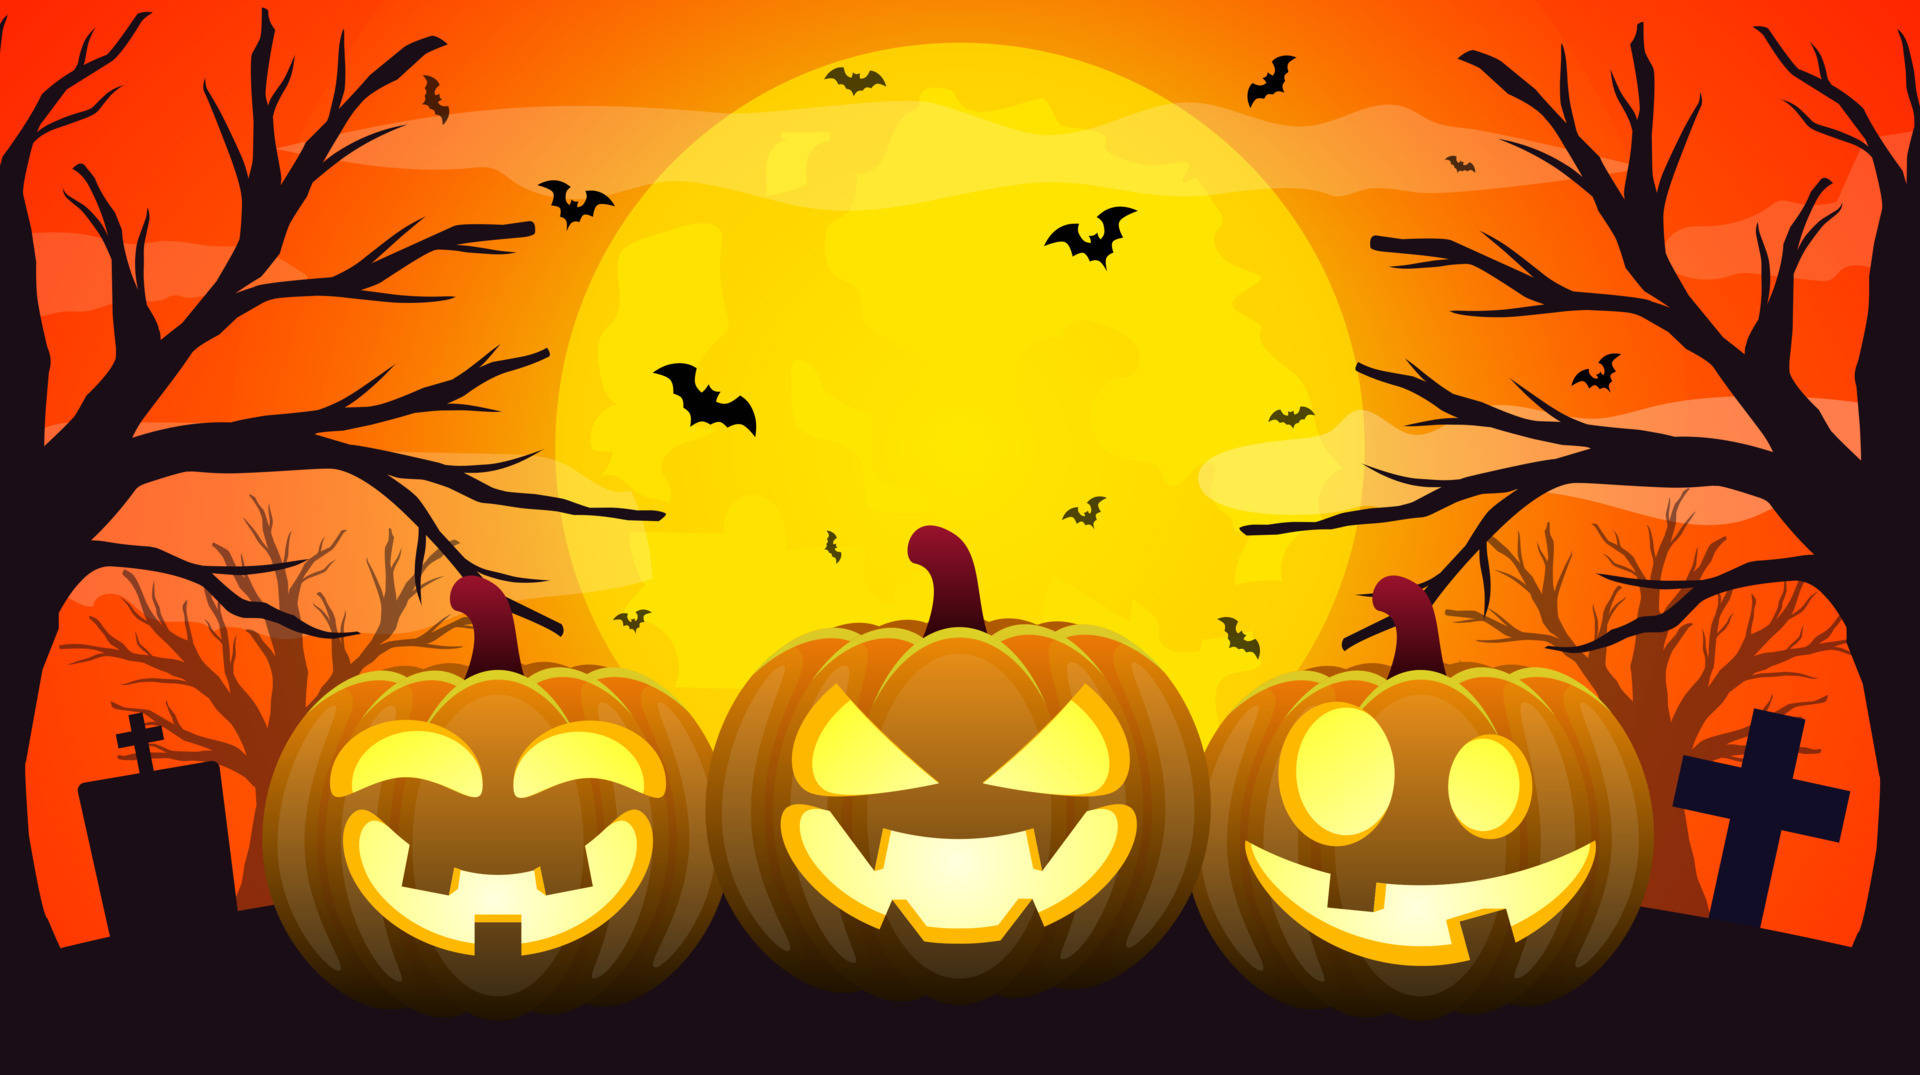 Get festive for Spooky Season! Wallpaper